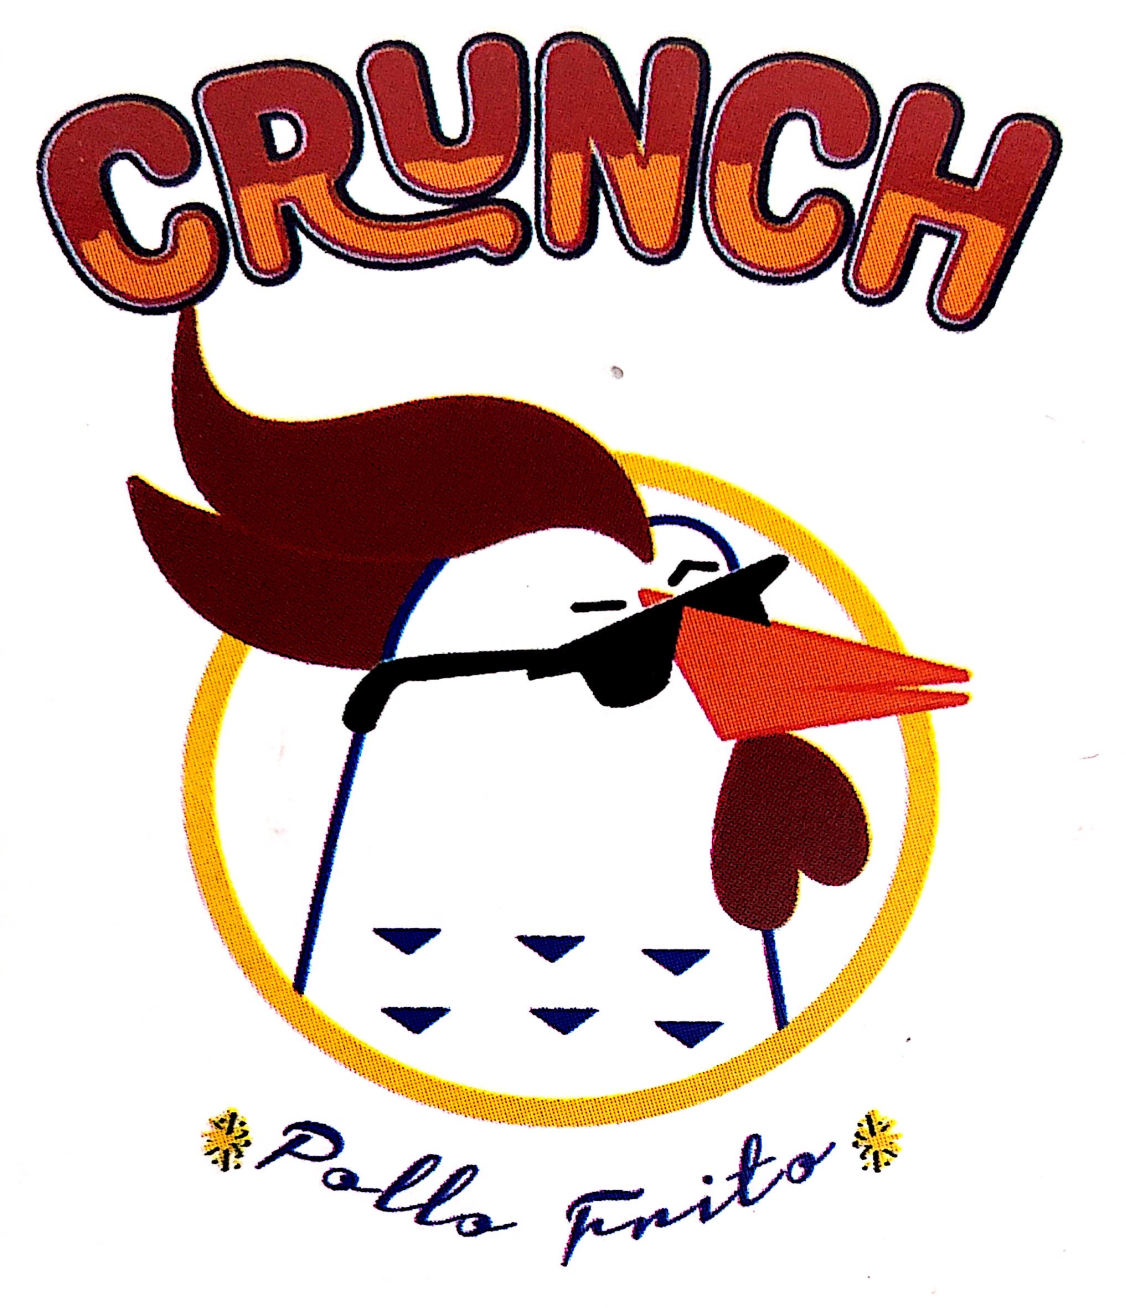 Crunch Del Pollo